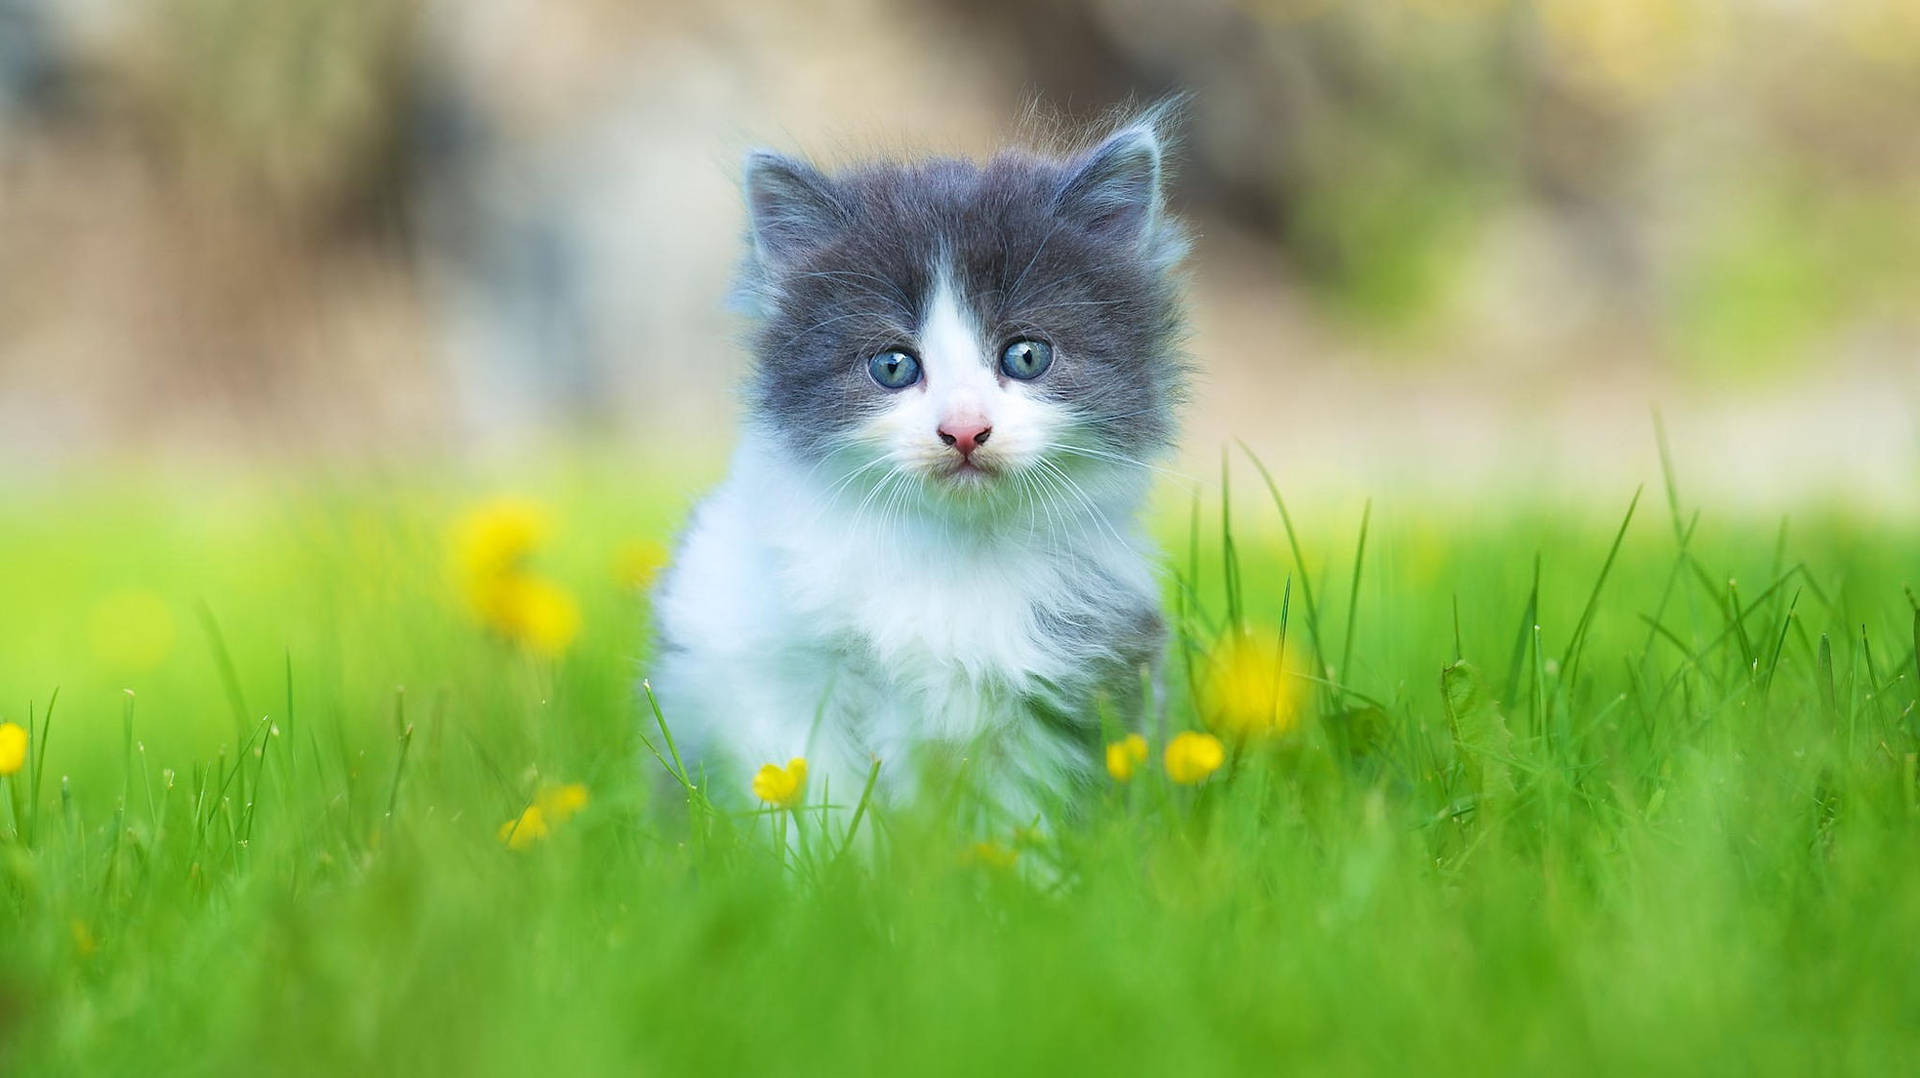 Cute Cat In Grass